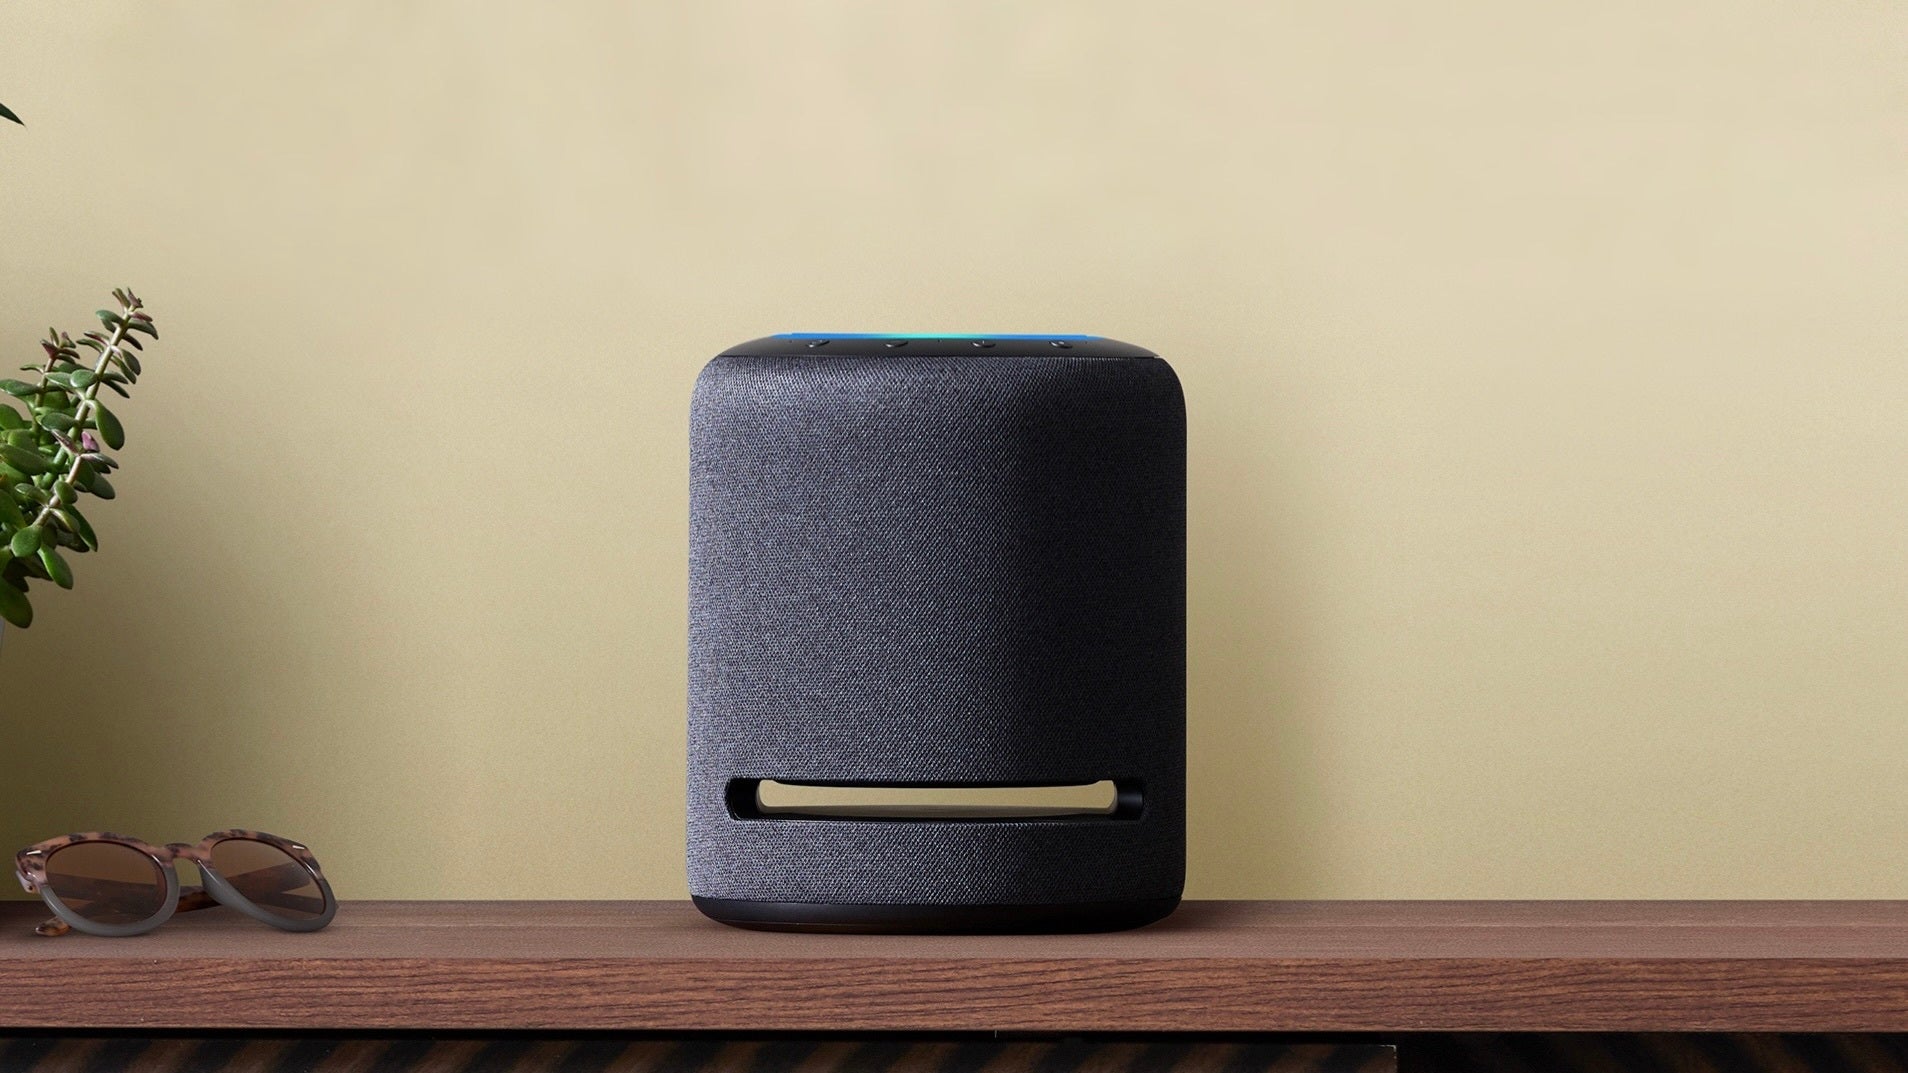 Amazon updates its Echo smart speaker lineup